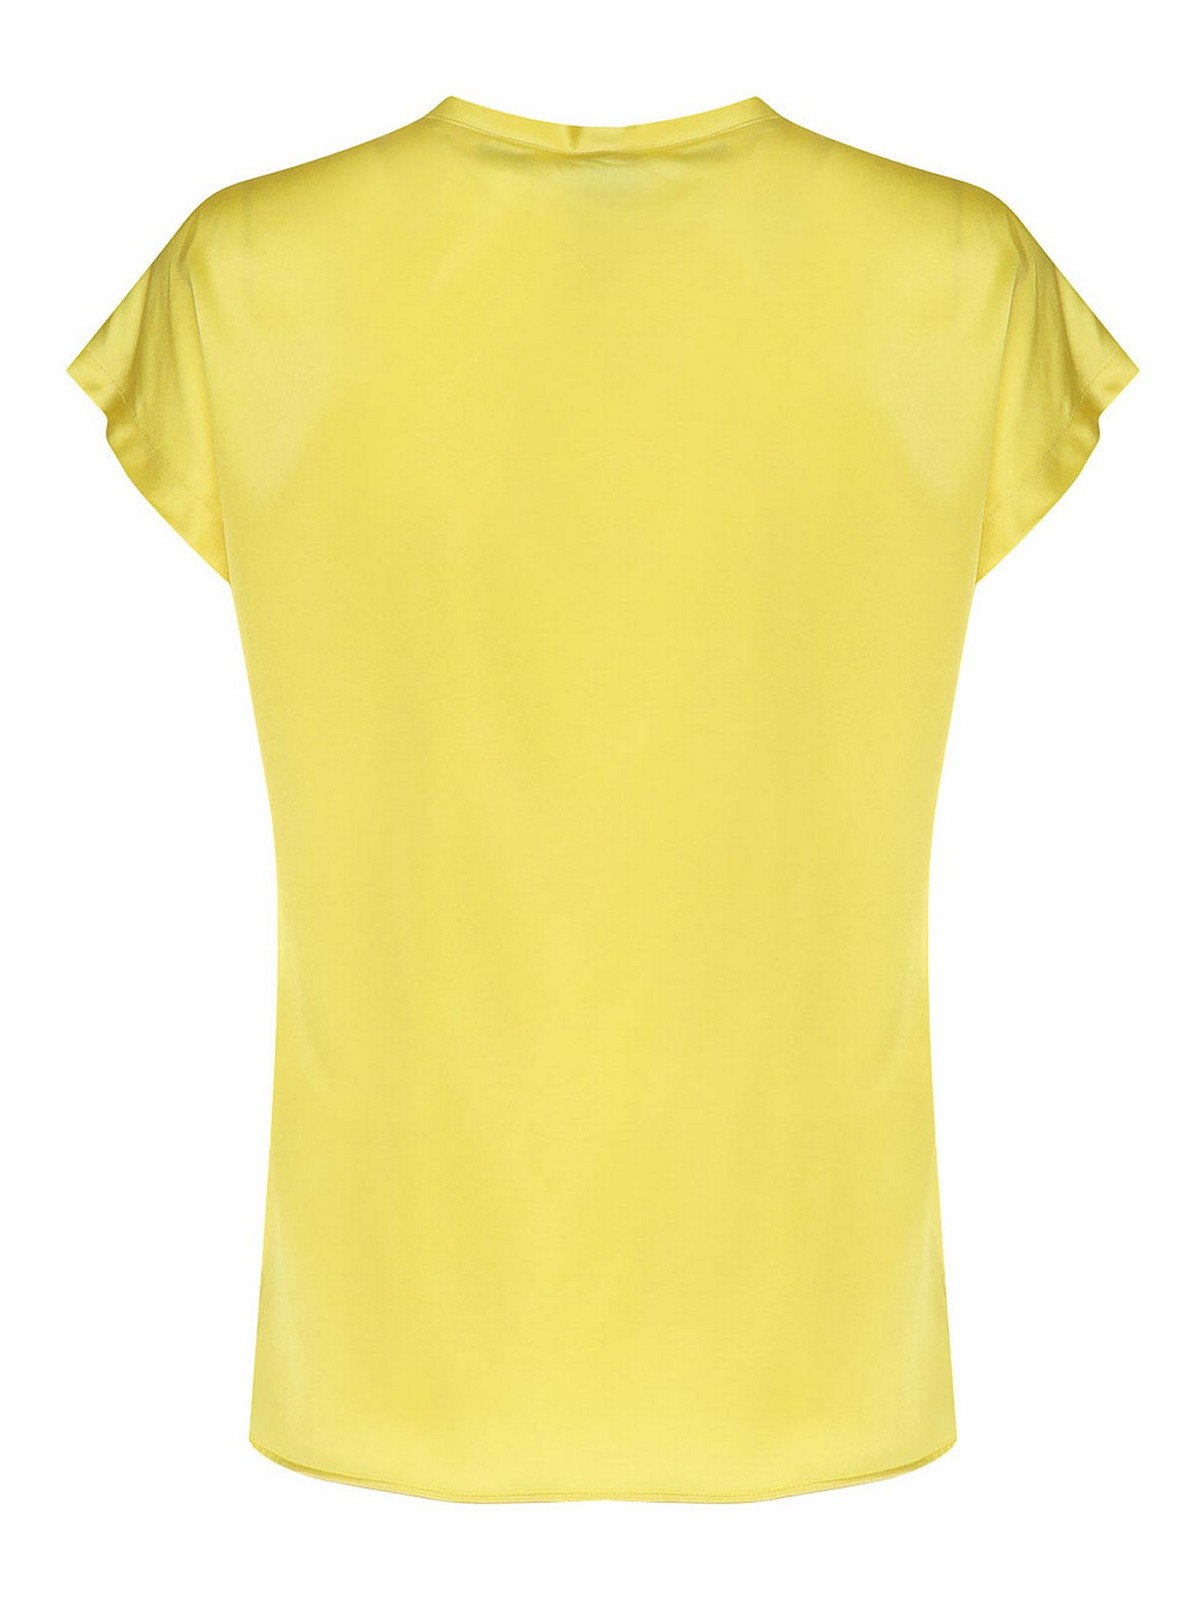 Shop Pinko Silk T-shirt In Yellow